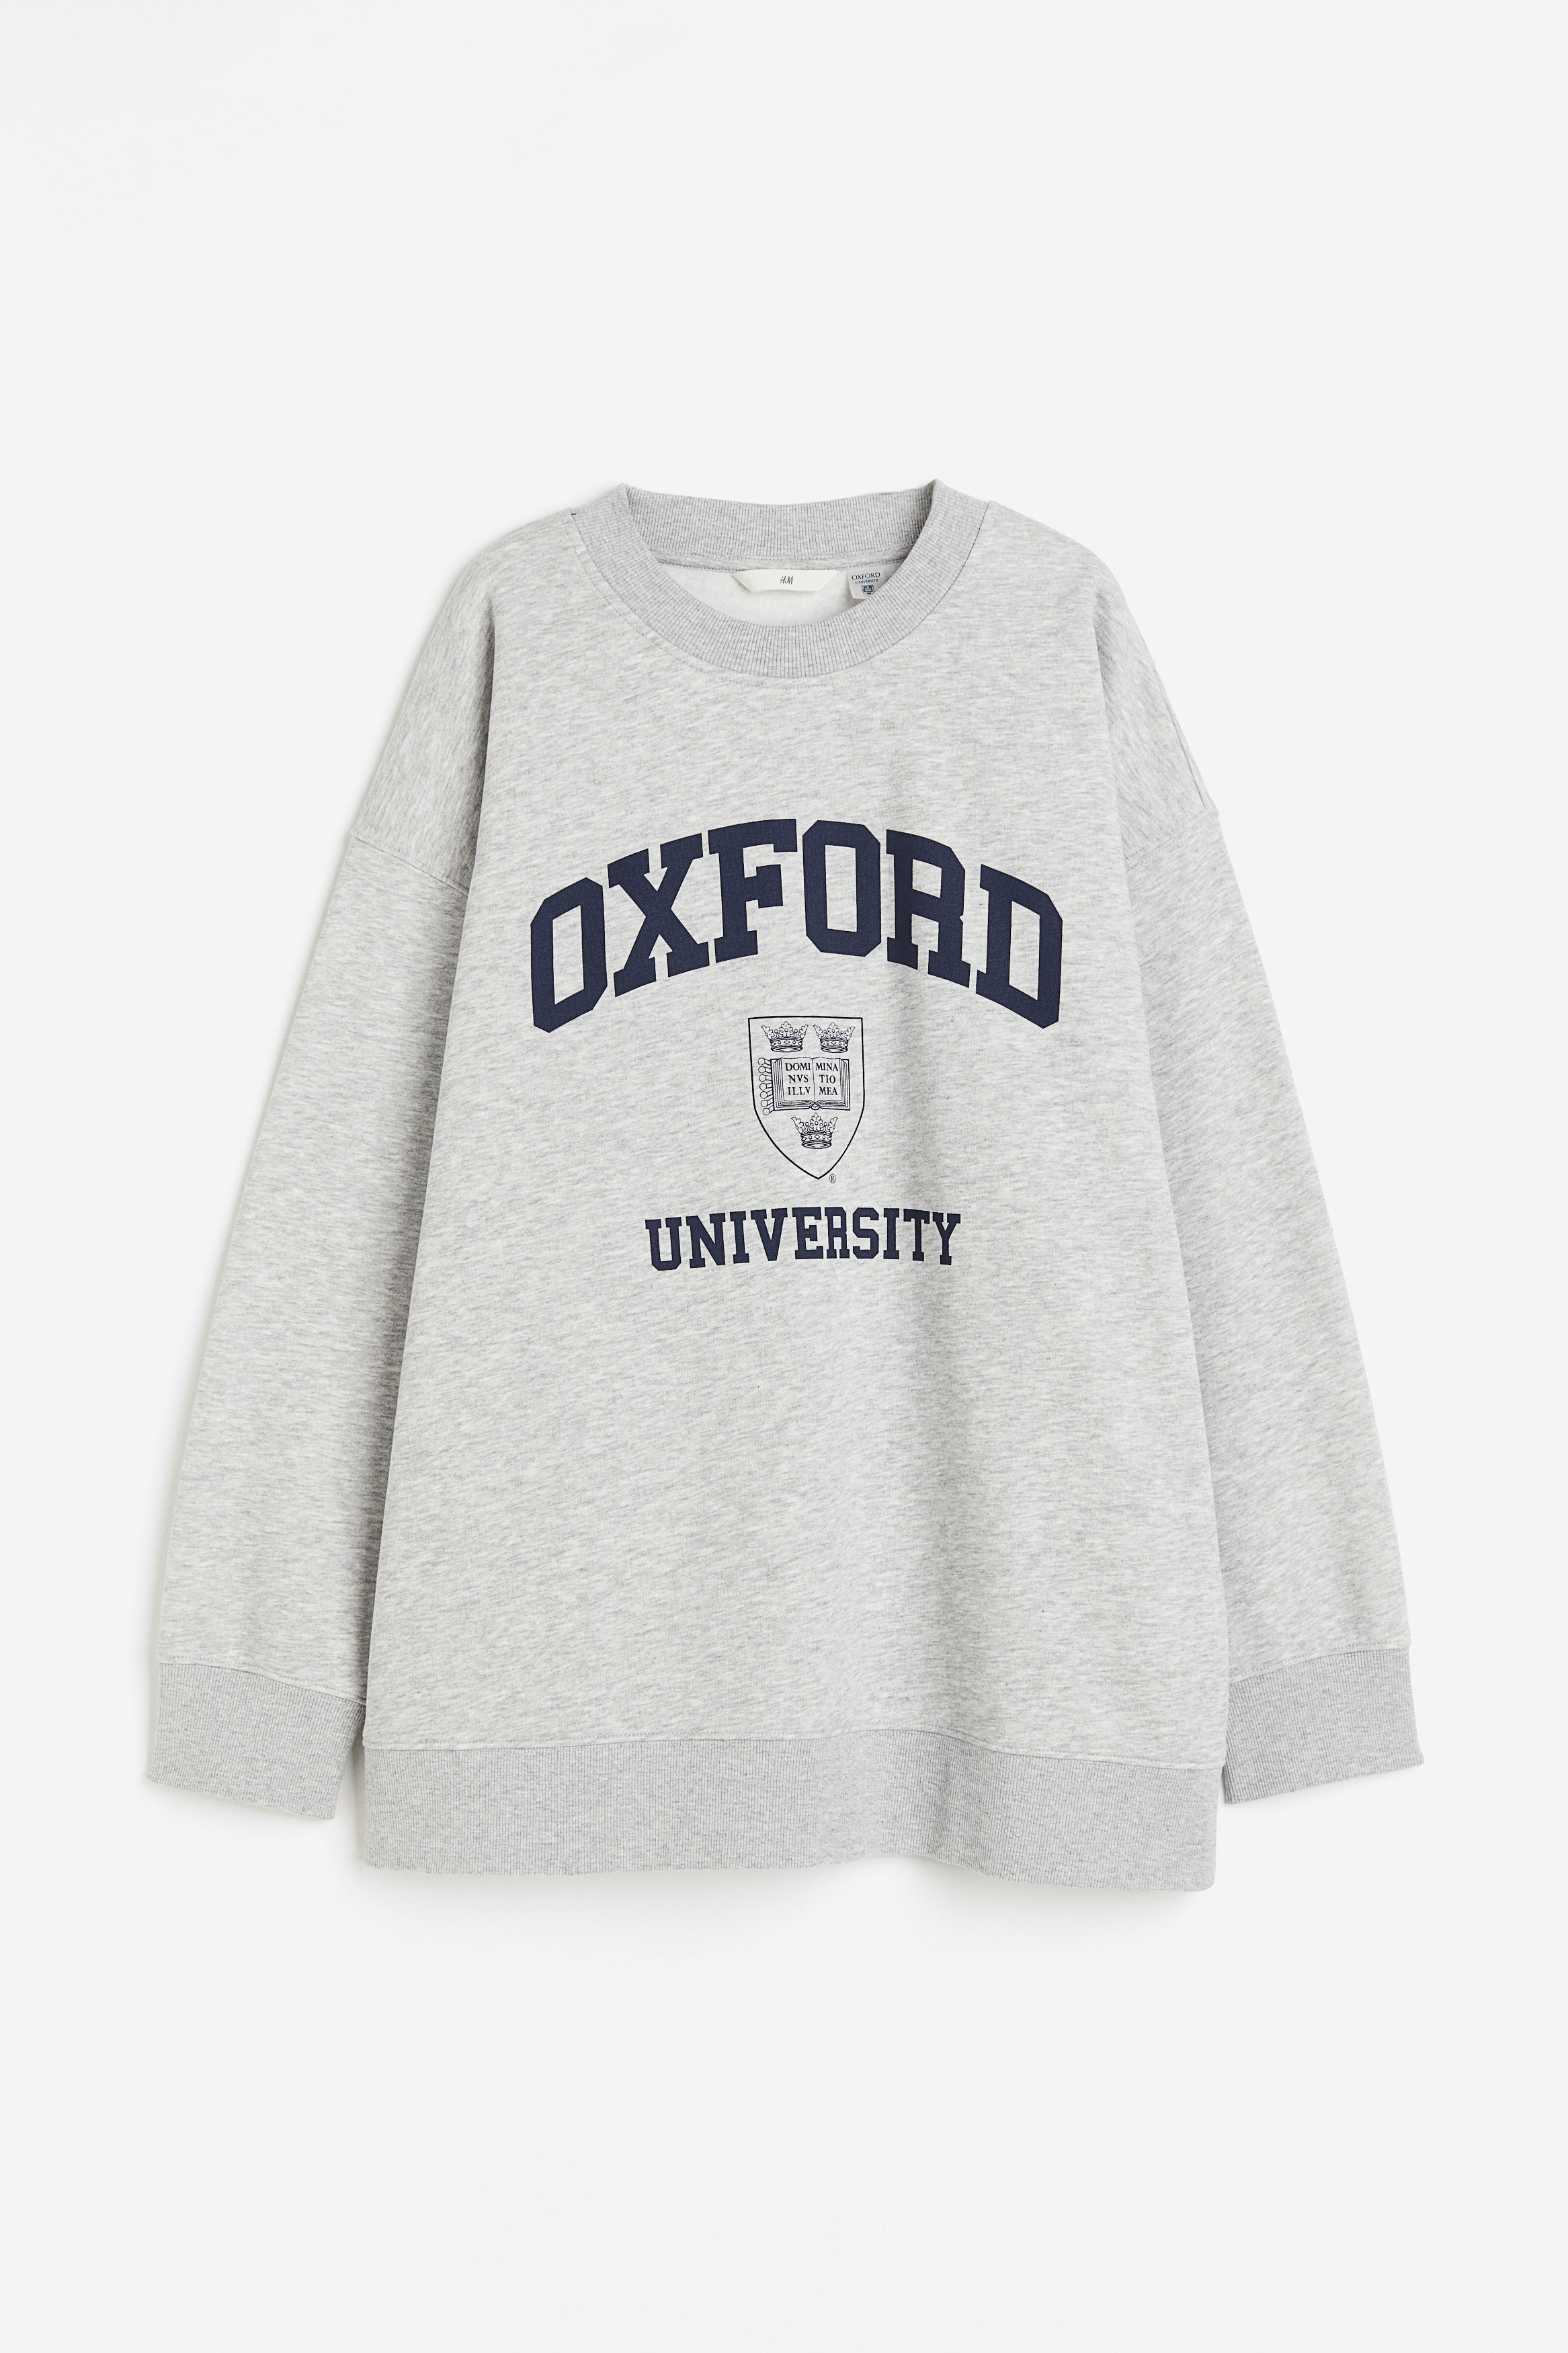 Billede af H&M Oversized Sweatshirt Gråmeleret/oxford University, Hoodies & Sweatshirts. Farve: Grey marl/oxford university I størrelse S